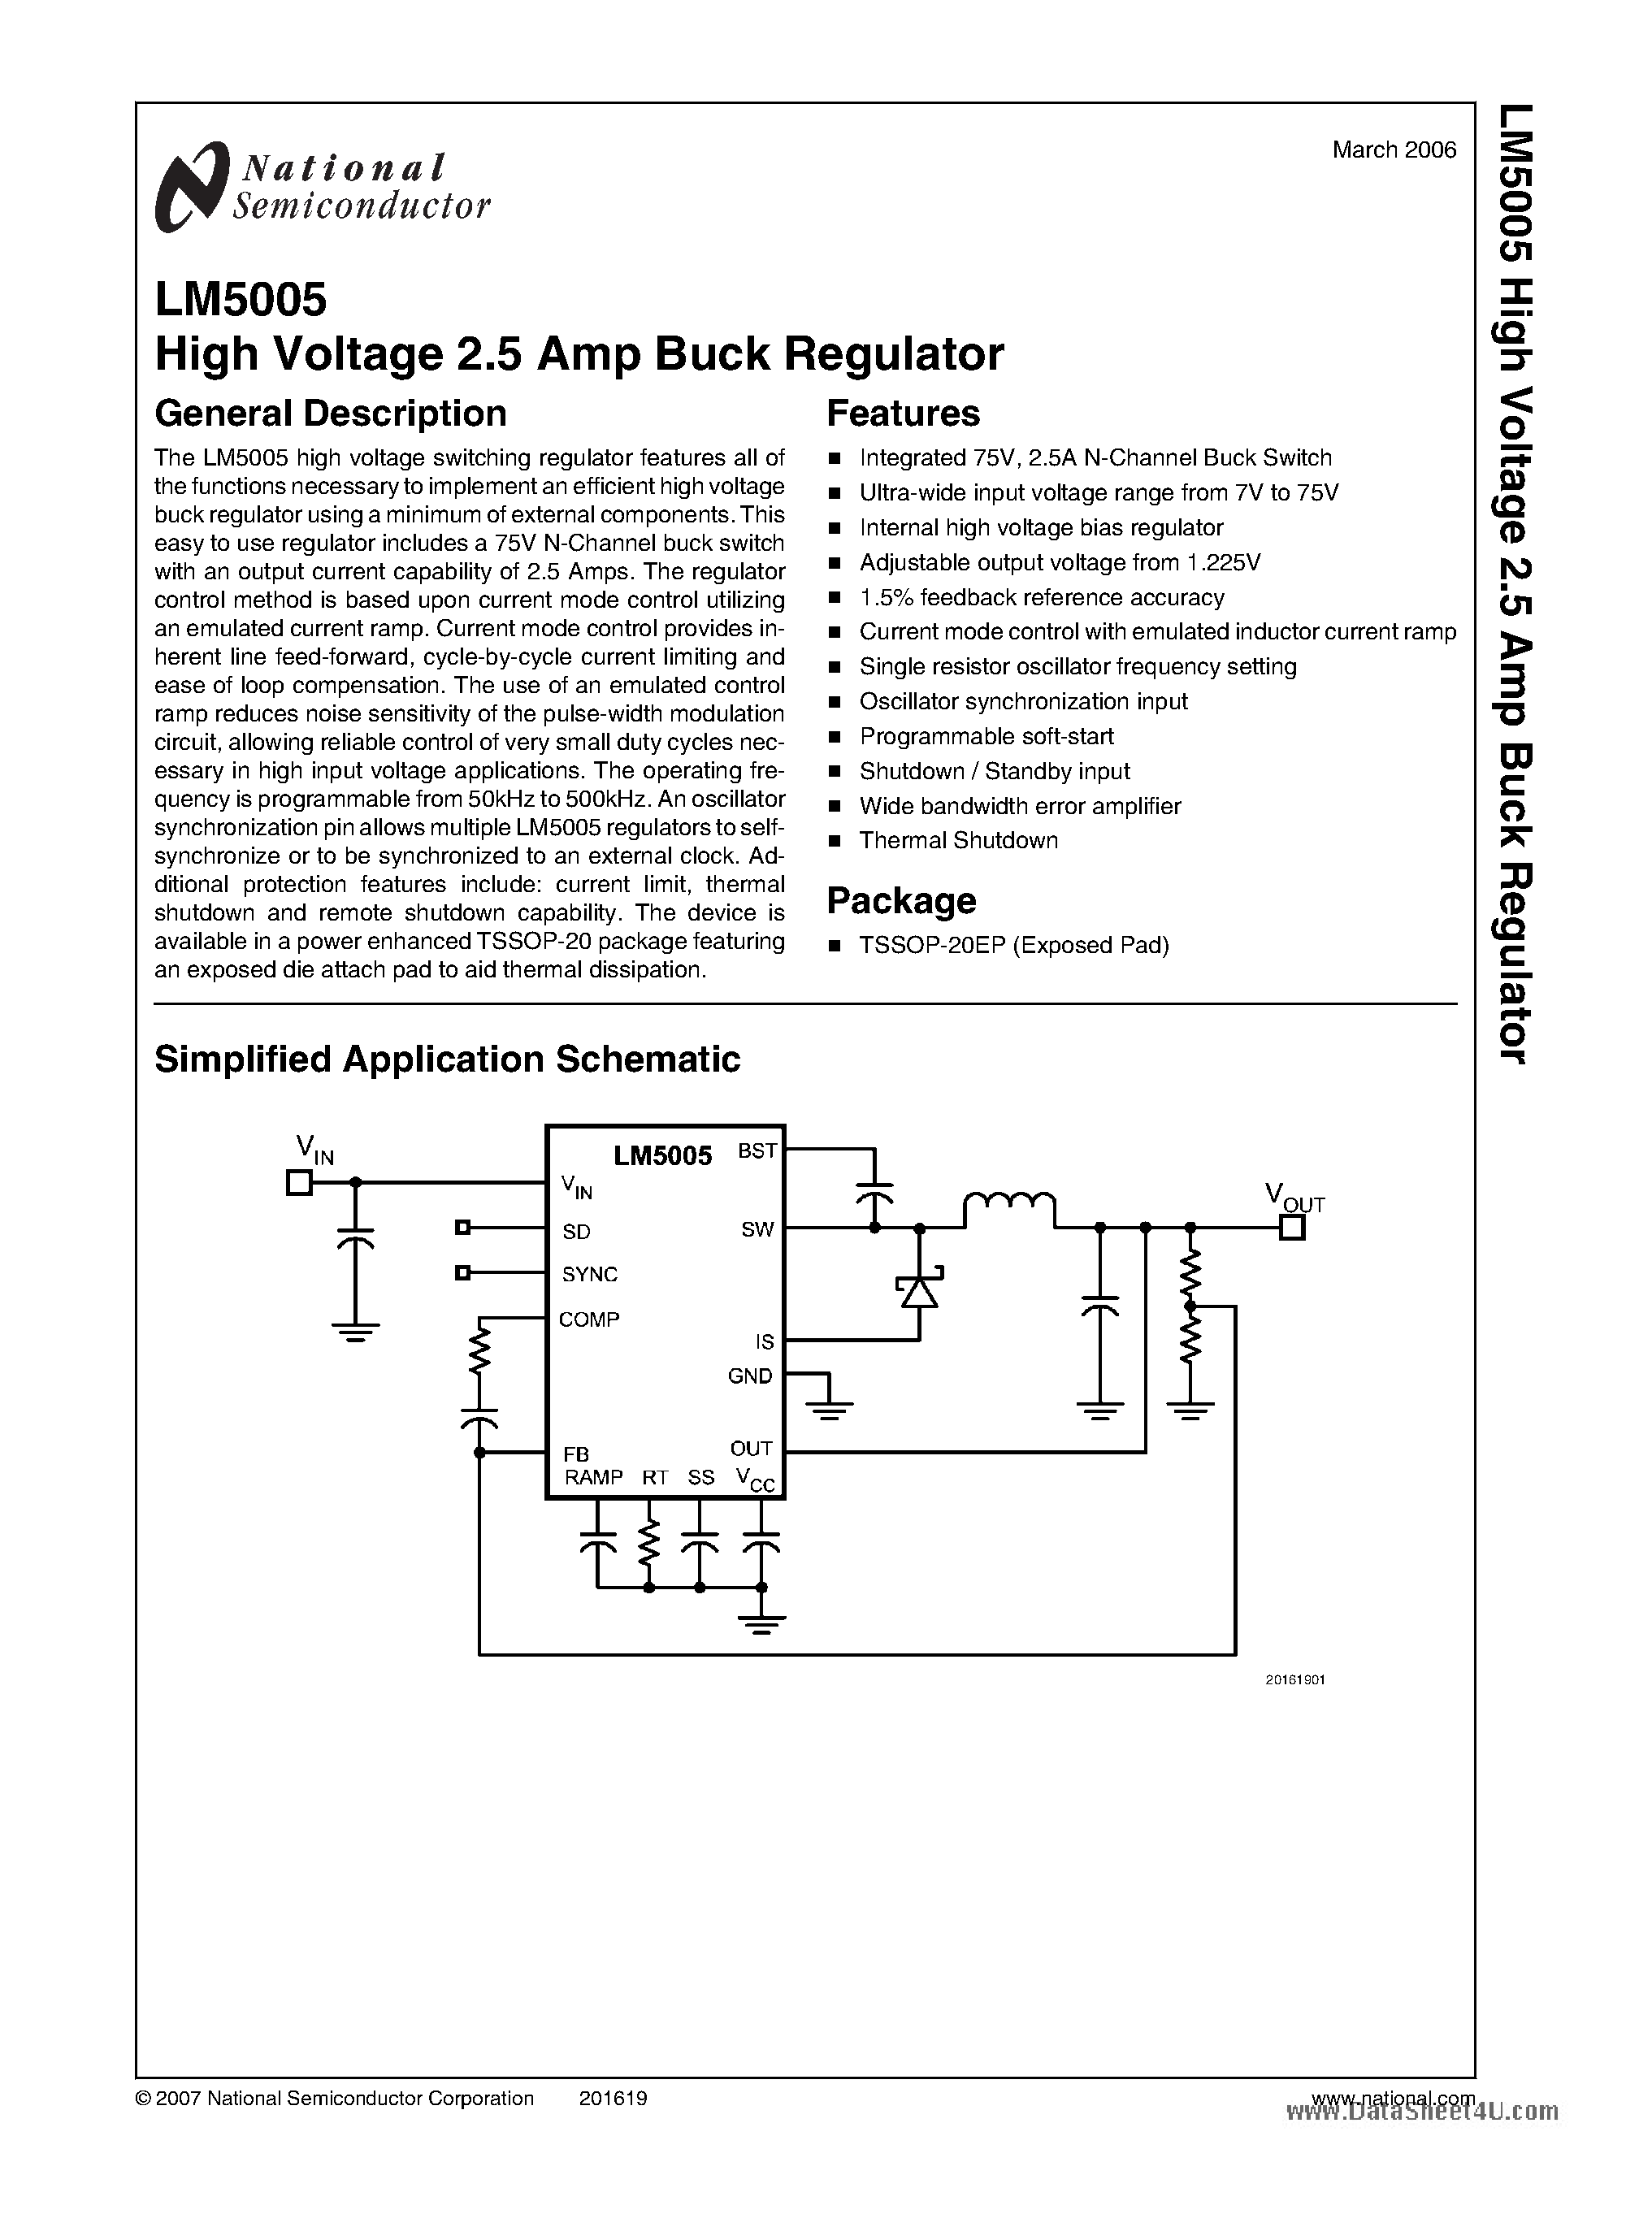 Даташит LM5005 - High Voltage 2.5 Amp Buck Regulator страница 1